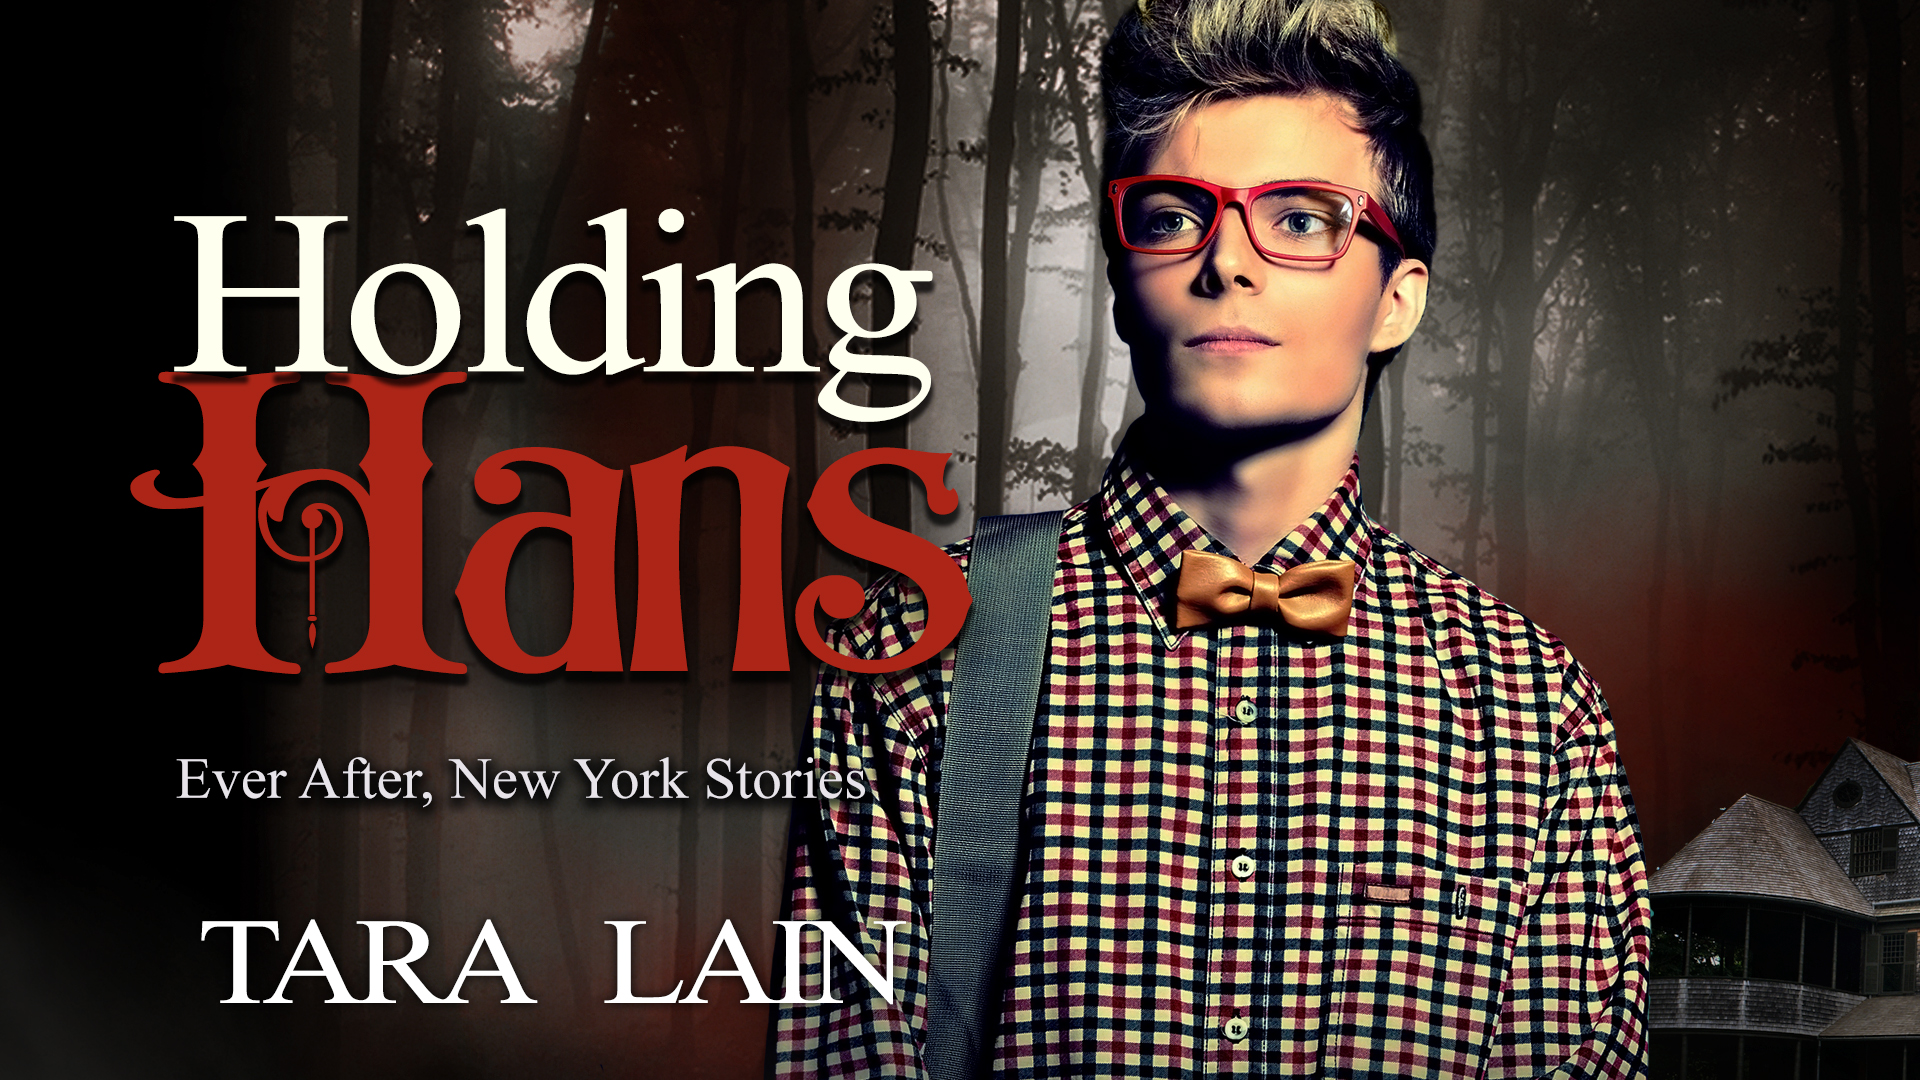 Holding Hans by Tara Lain